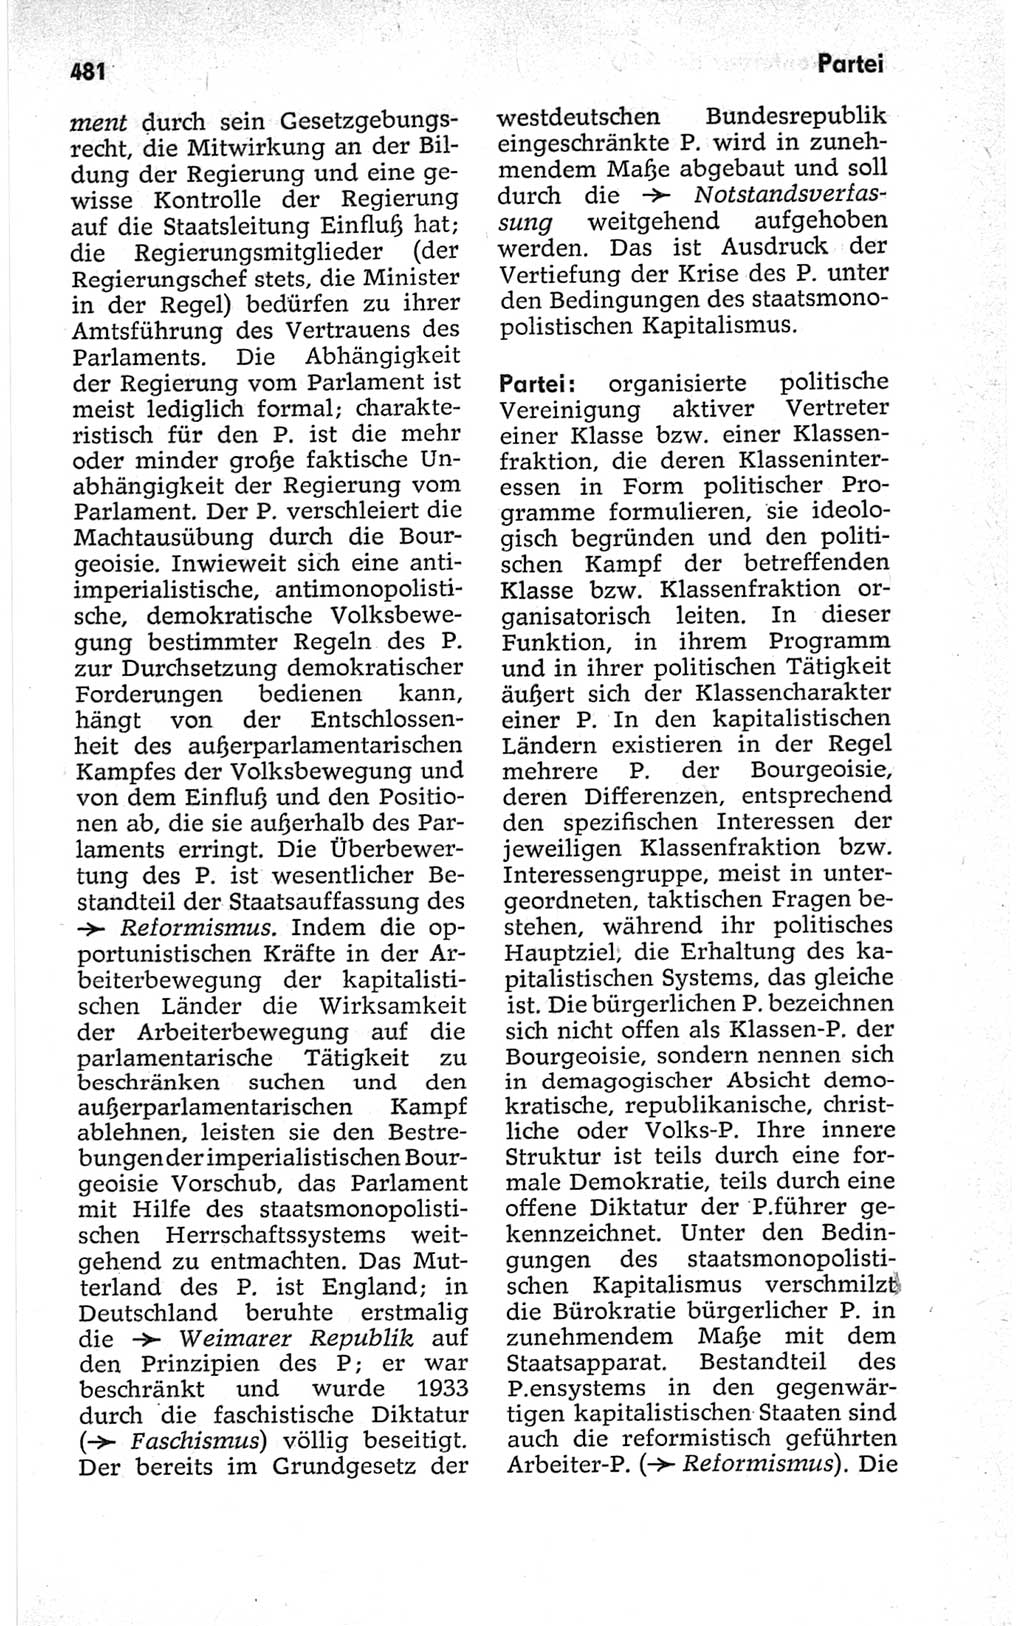 Kleines politisches Wörterbuch [Deutsche Demokratische Republik (DDR)] 1967, Seite 481 (Kl. pol. Wb. DDR 1967, S. 481)